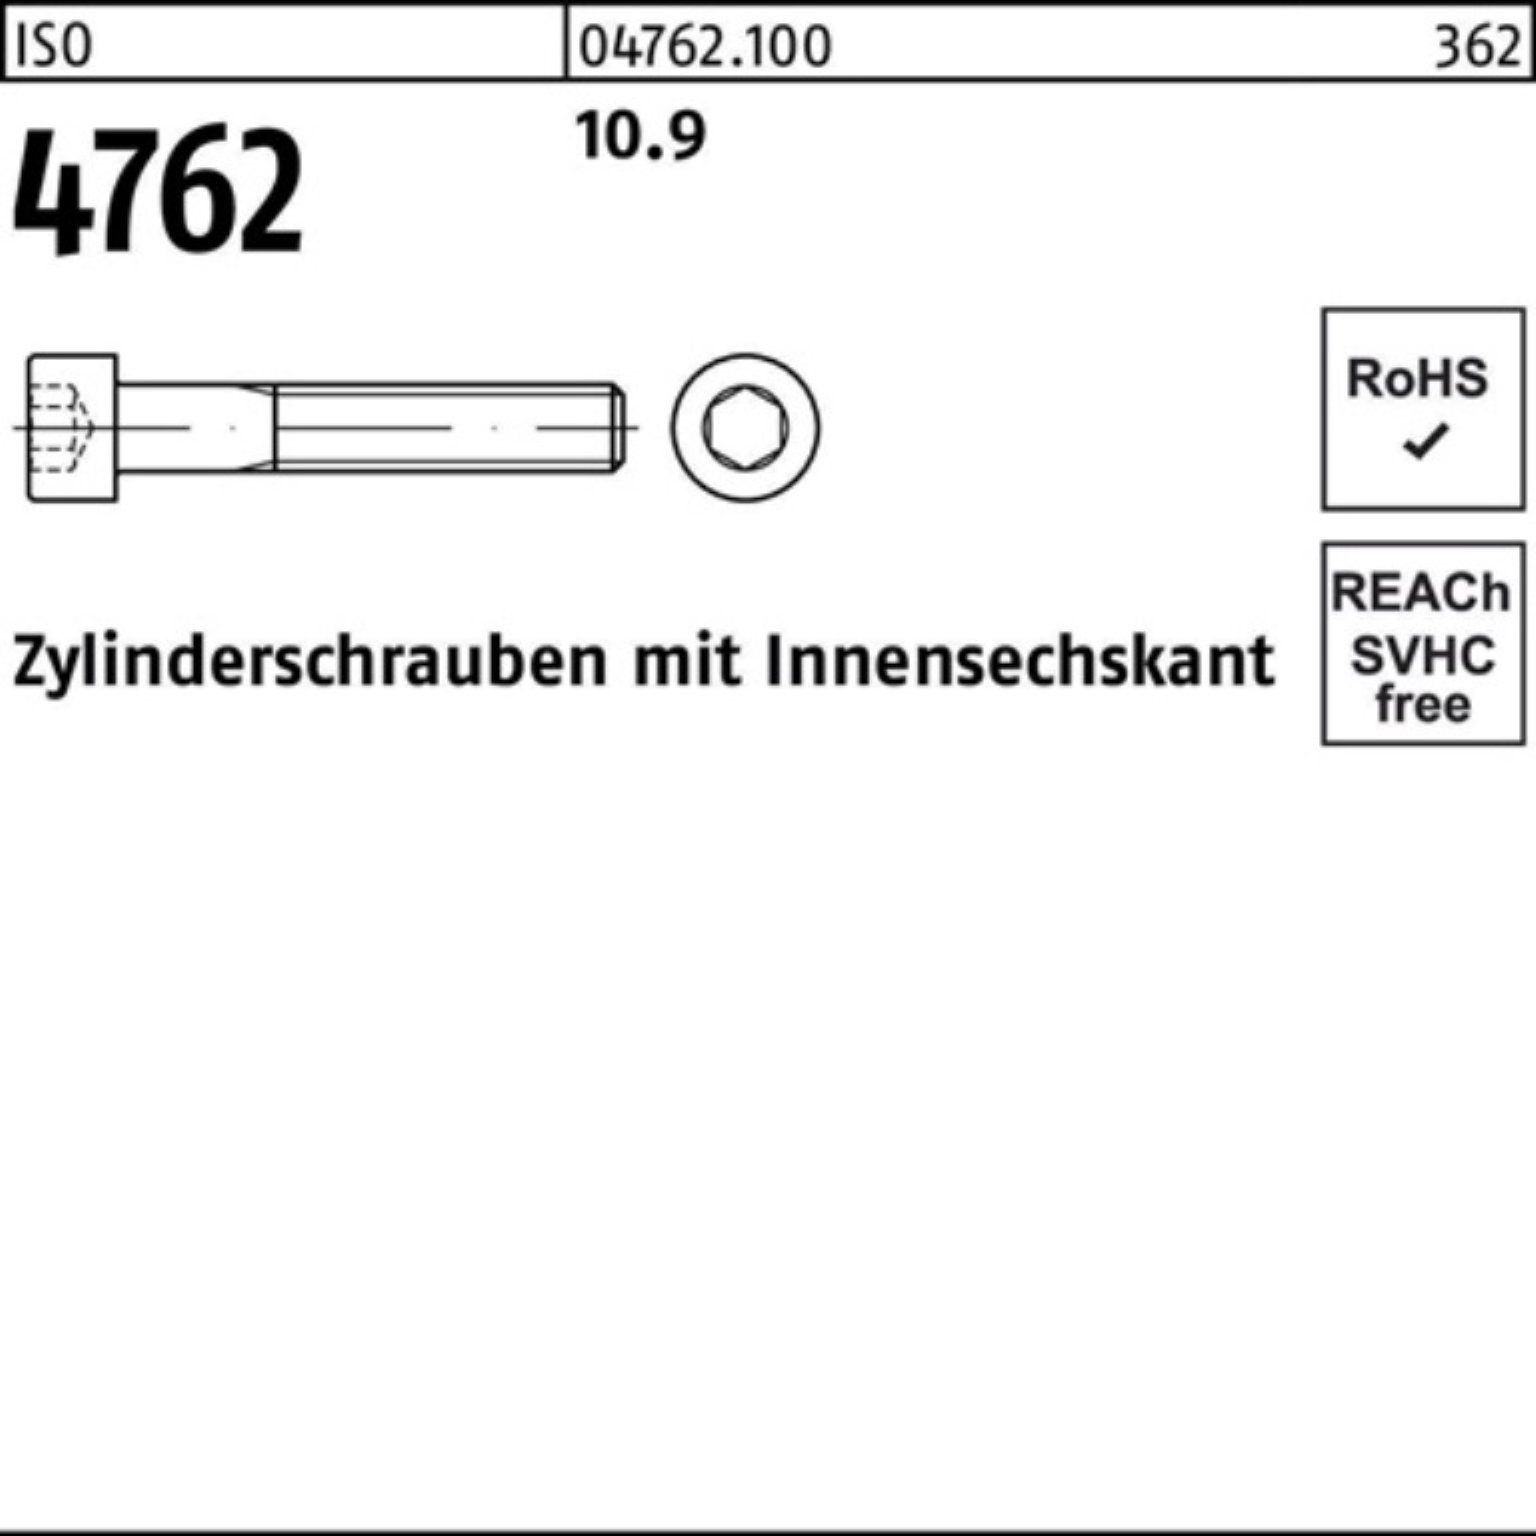 70 Reyher 25 10.9 Pack 4762 Zylinderschraube Innen-6kt ISO 100er Zylinderschraube M18x Stück